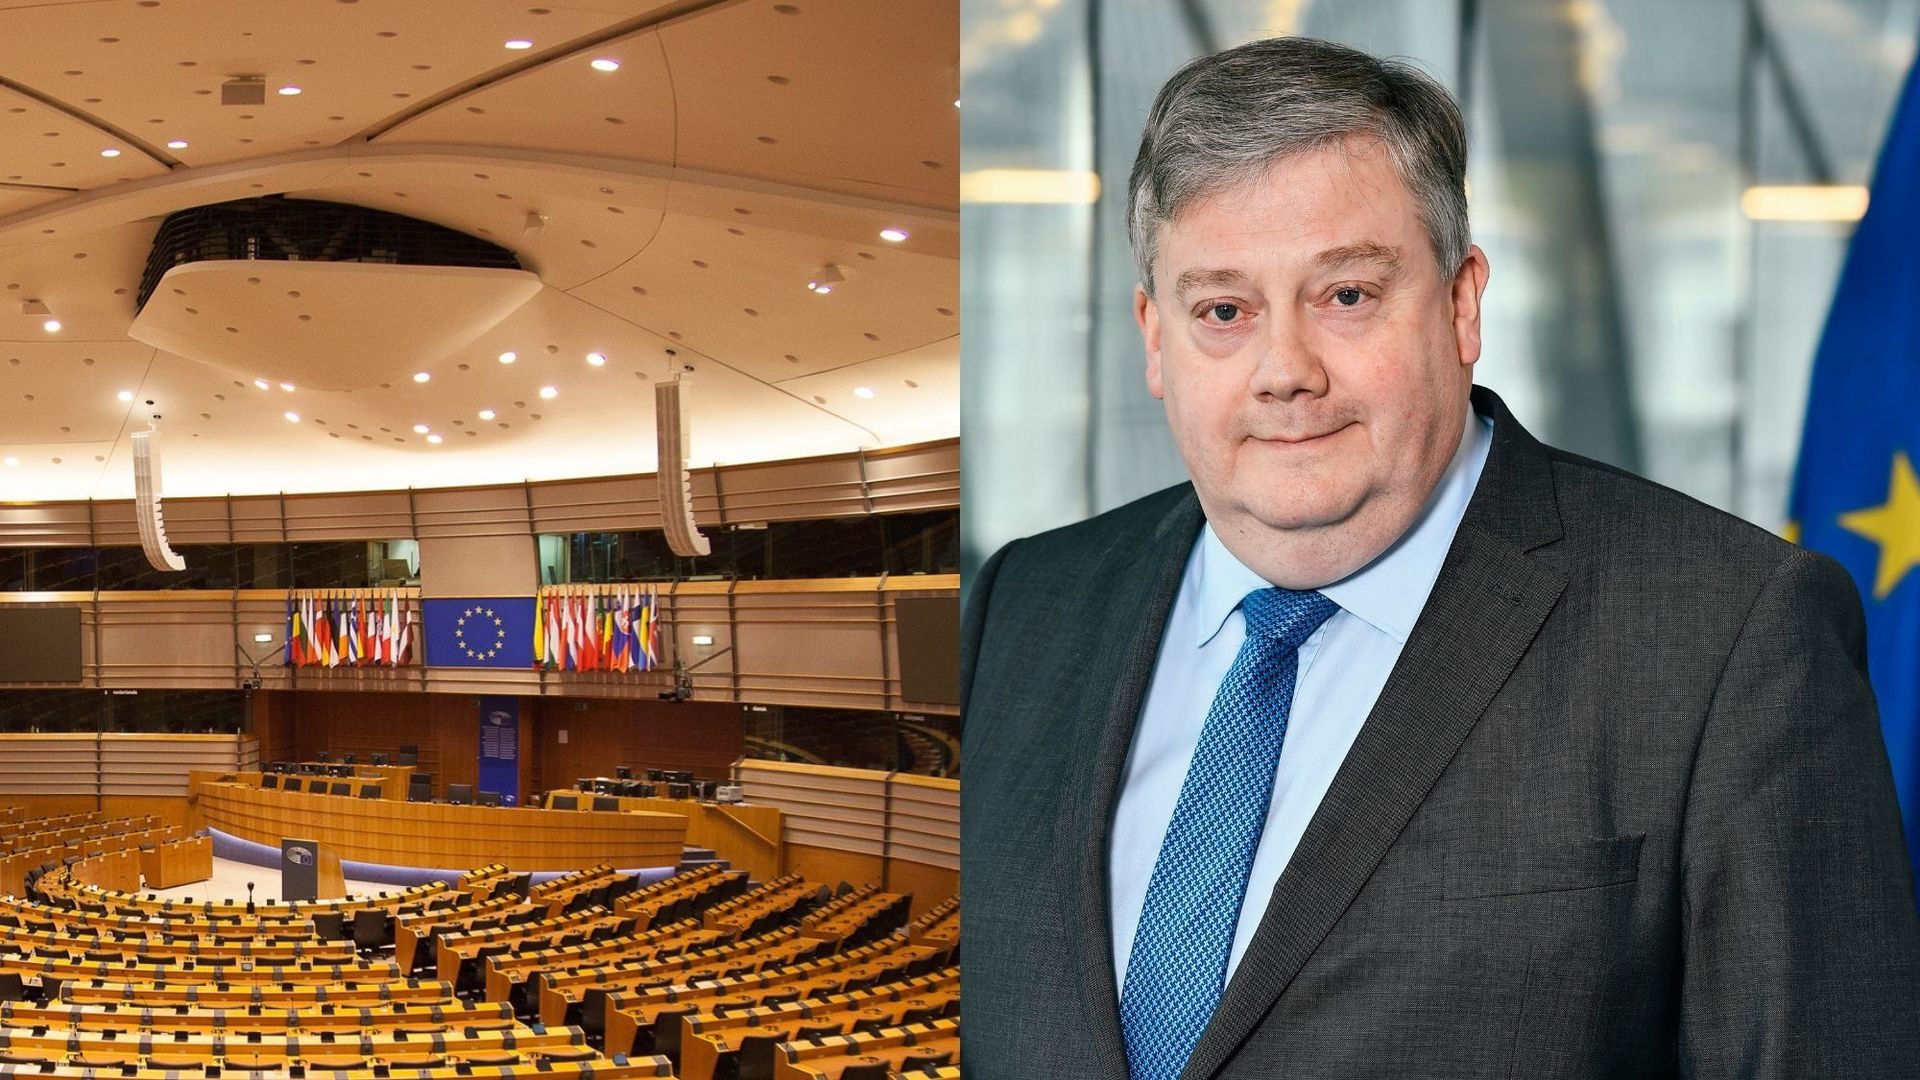 Corruption présumée au Parlement européen : l’évolution du discours de l’eurodéputé Marc Tarabella par rapport au Qatar